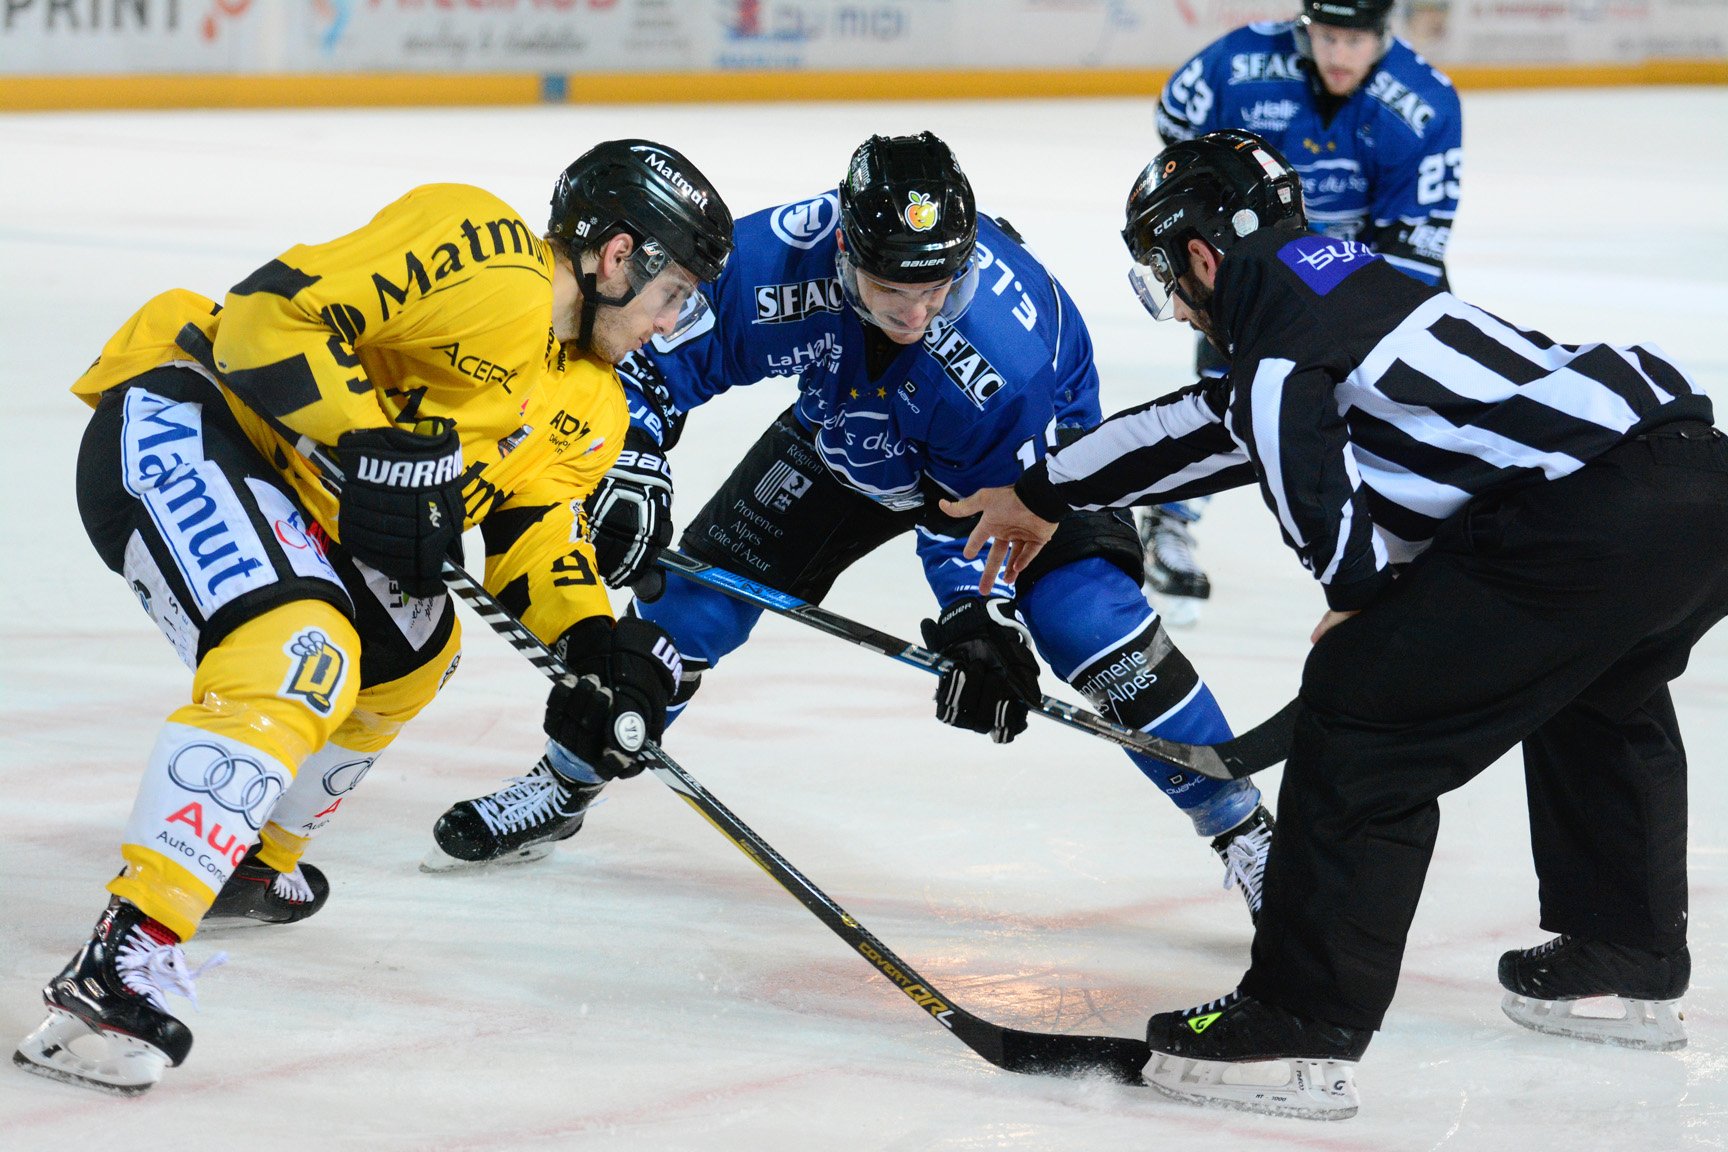 Match de hockey sur glace Gap-Bordeaux à l'Alp'arena - le 5/01 à 20h30